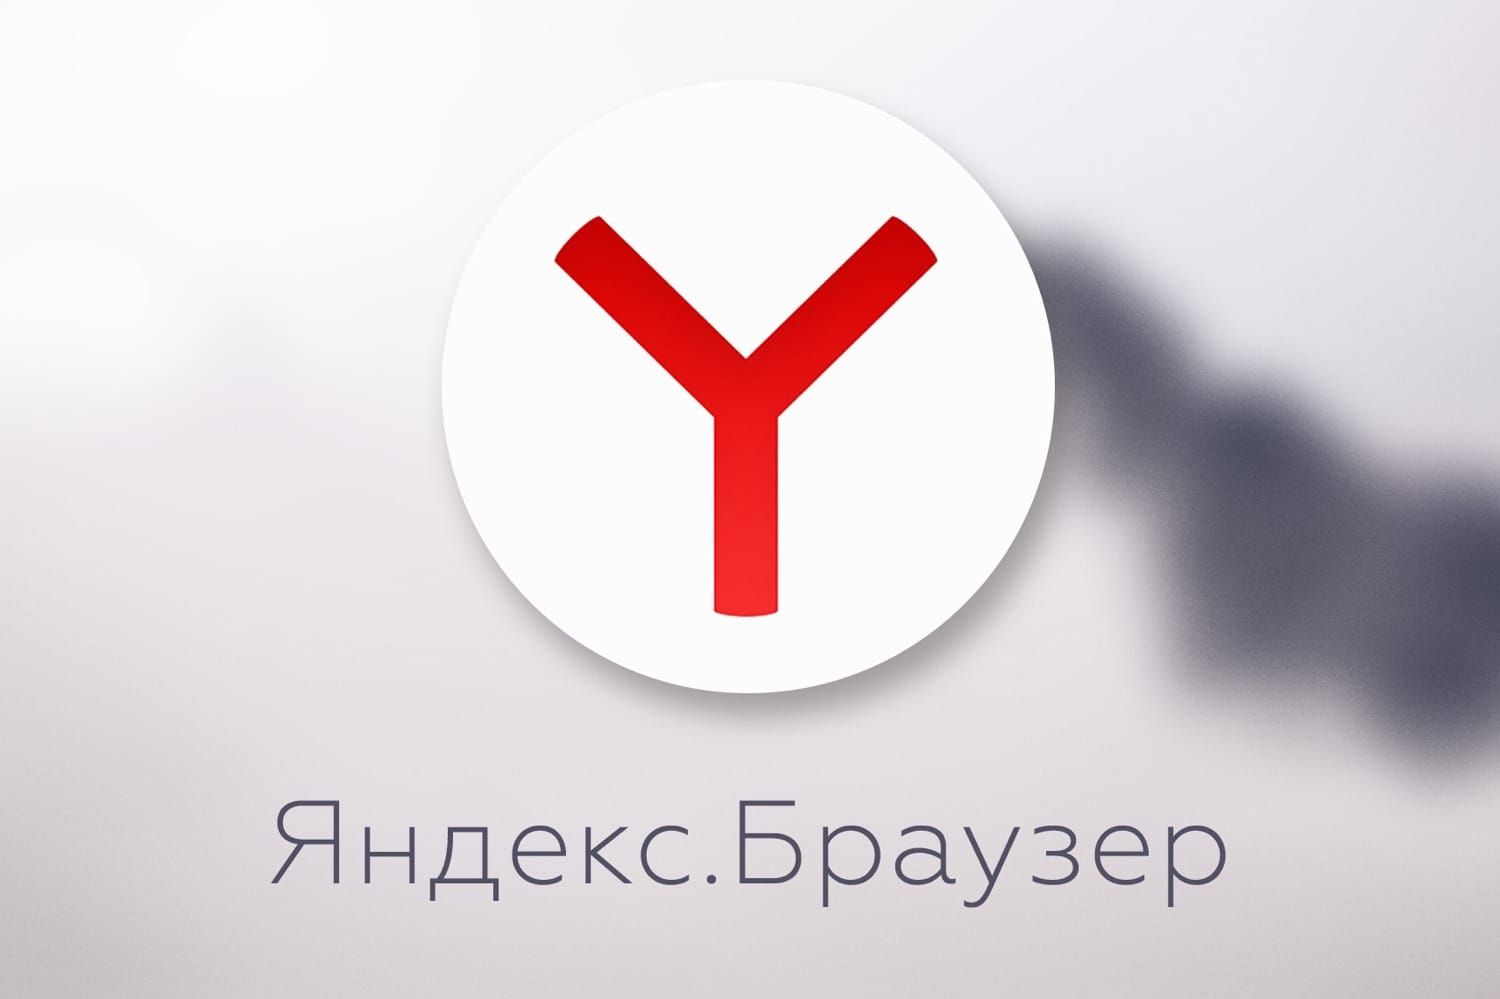 Яндекс.Браузер делает субтитры